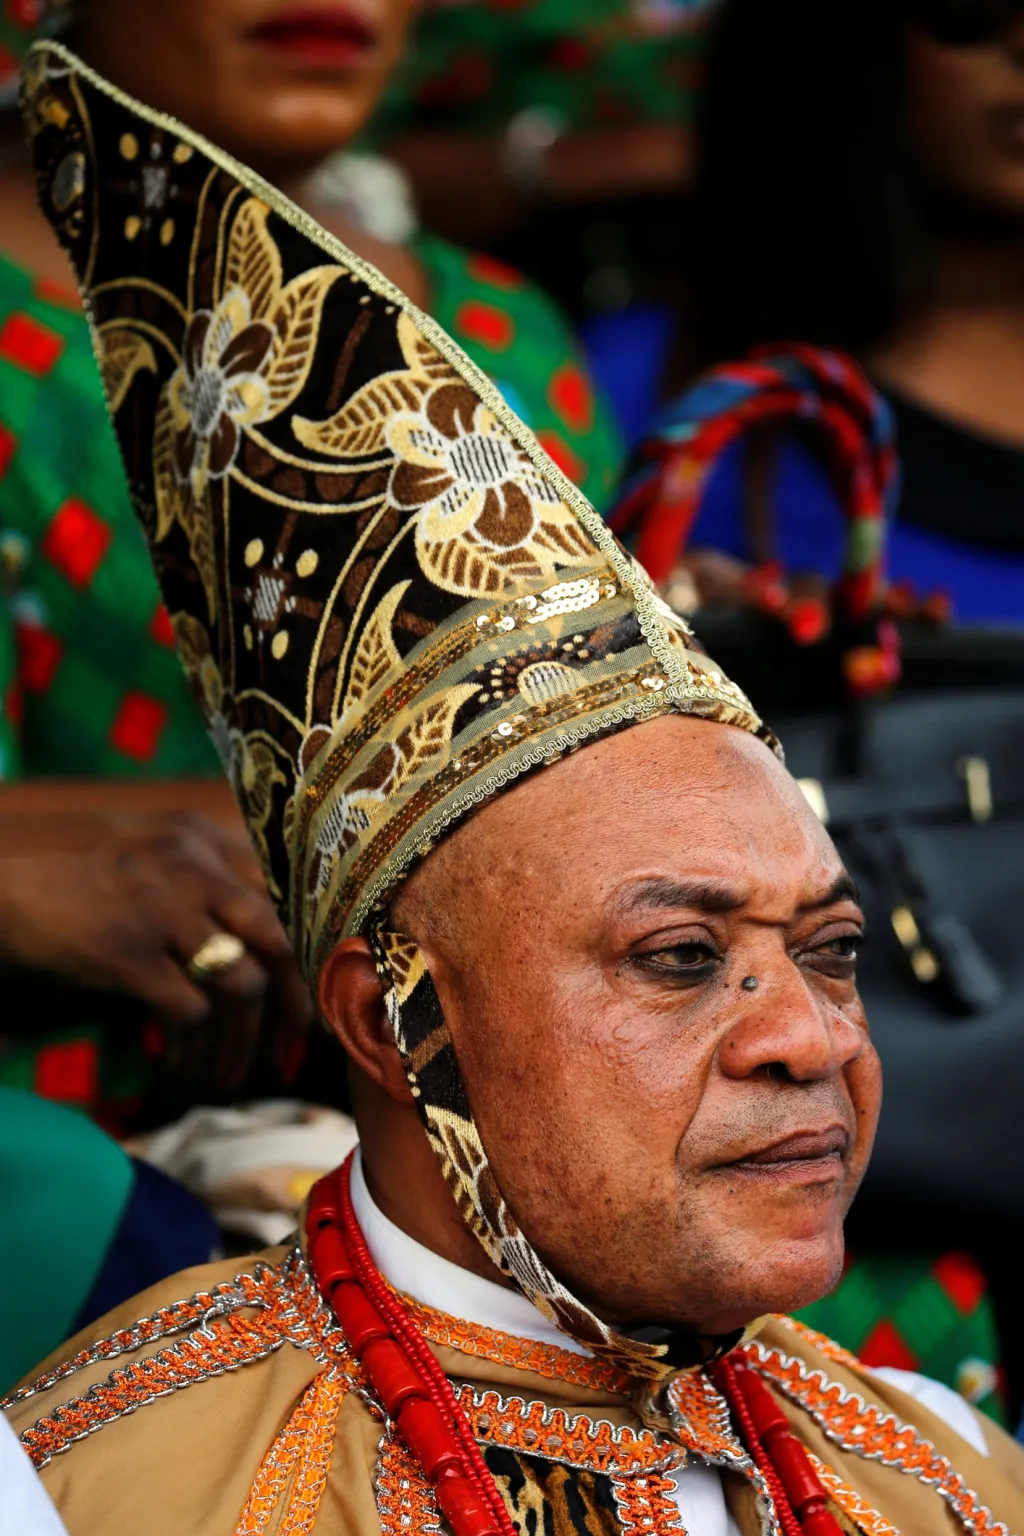 Nigerijský muž si k výročí Dne demokracie oblékl slavnostní šaty s výraznou pokrývkou hlavy